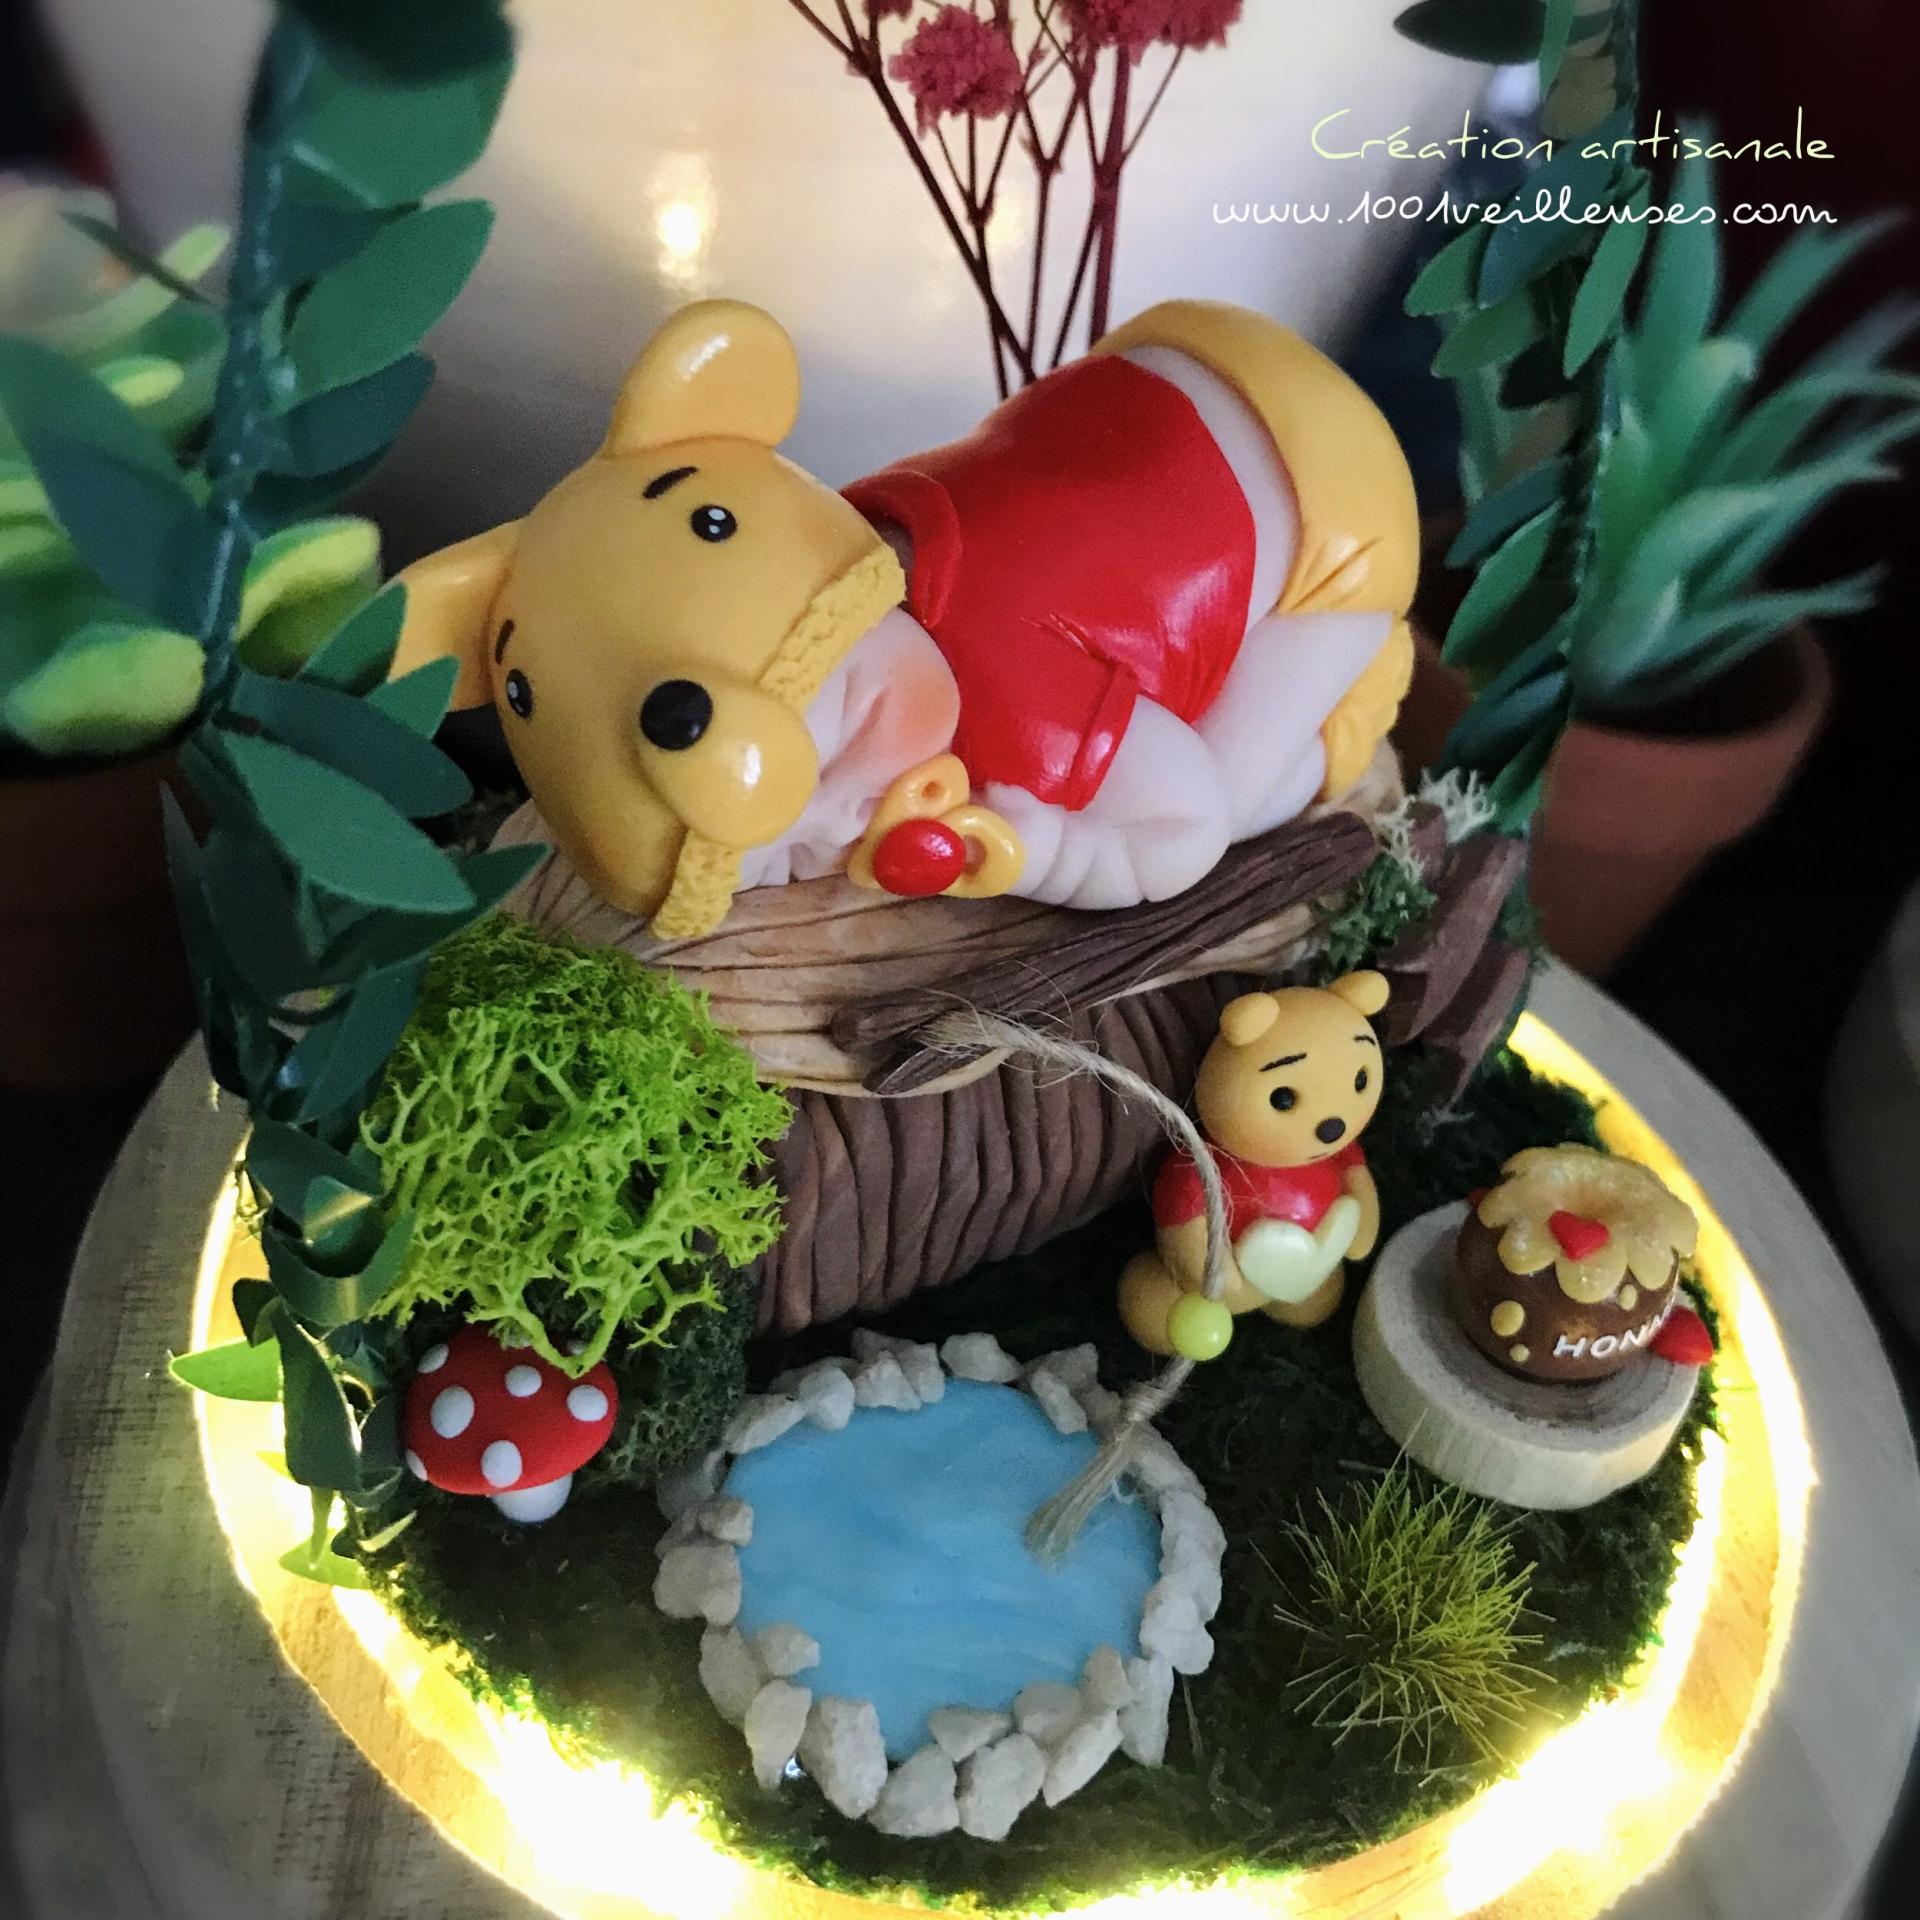 Cadeau naissance garçon - modèle winnie l'ourson - veilleuse - cloche led - avec diorama végétal - création artisanale